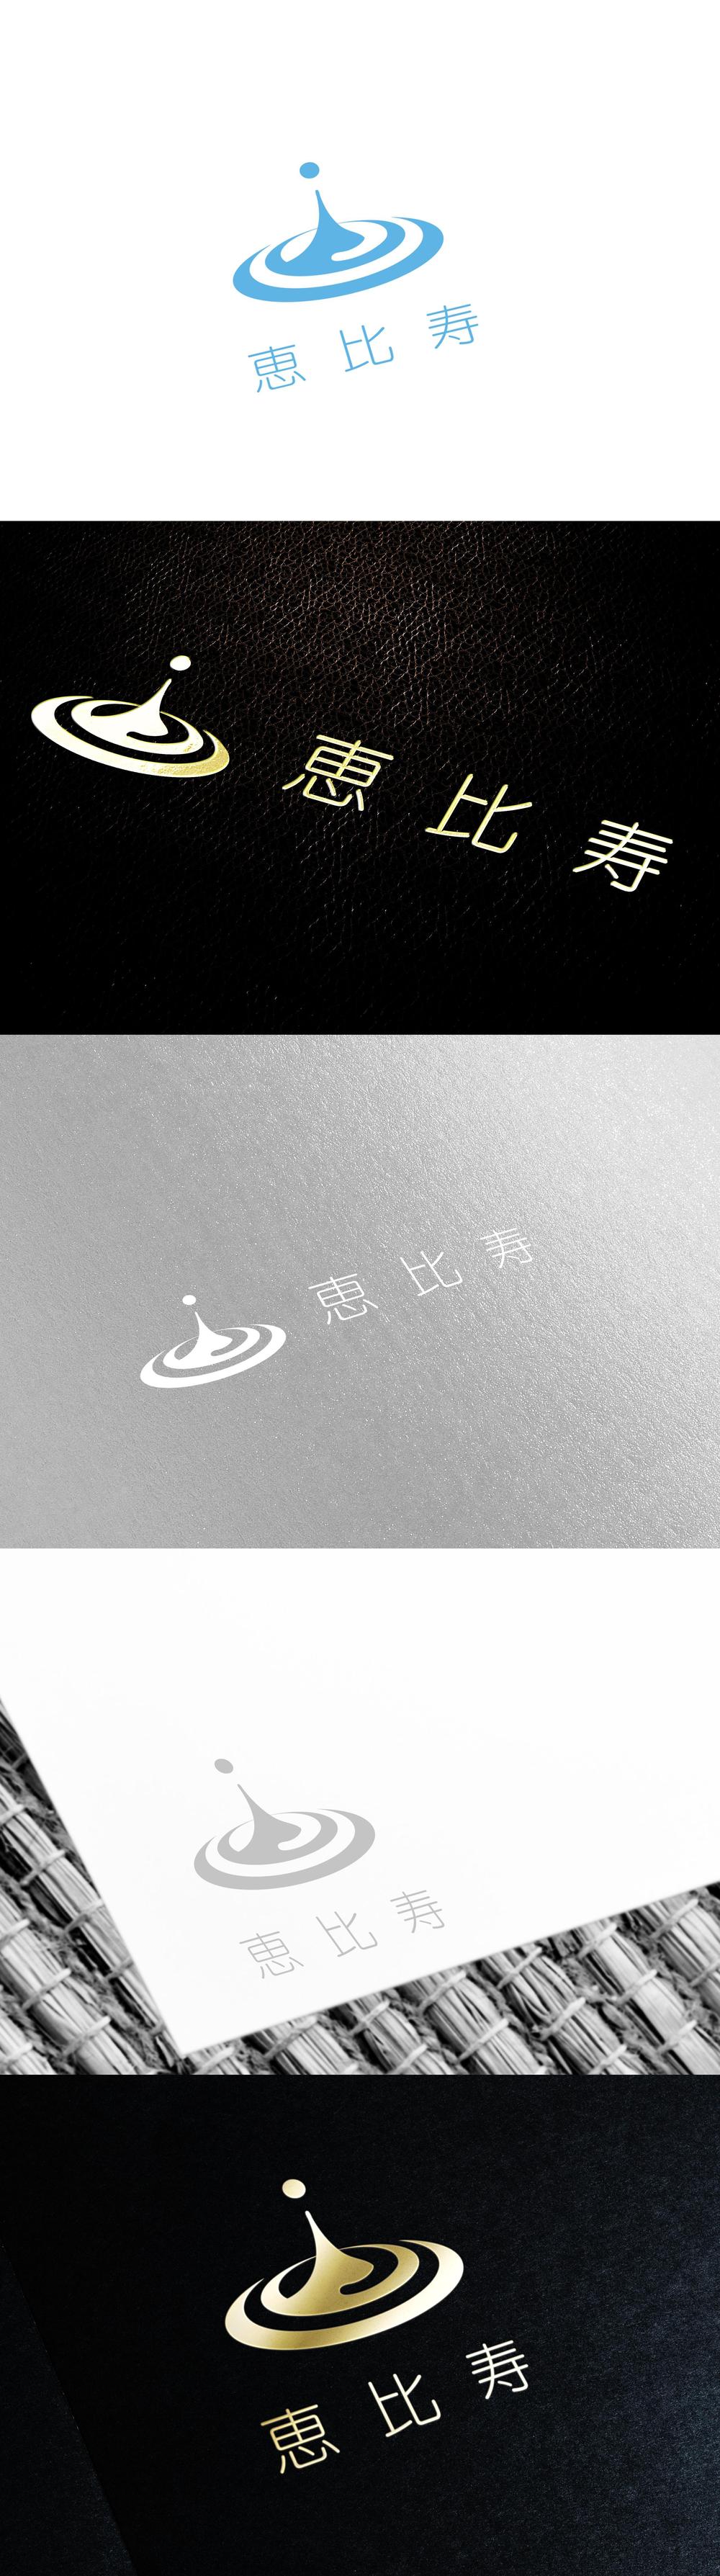 温浴事業   「株式会社 恵比寿 」のロゴ